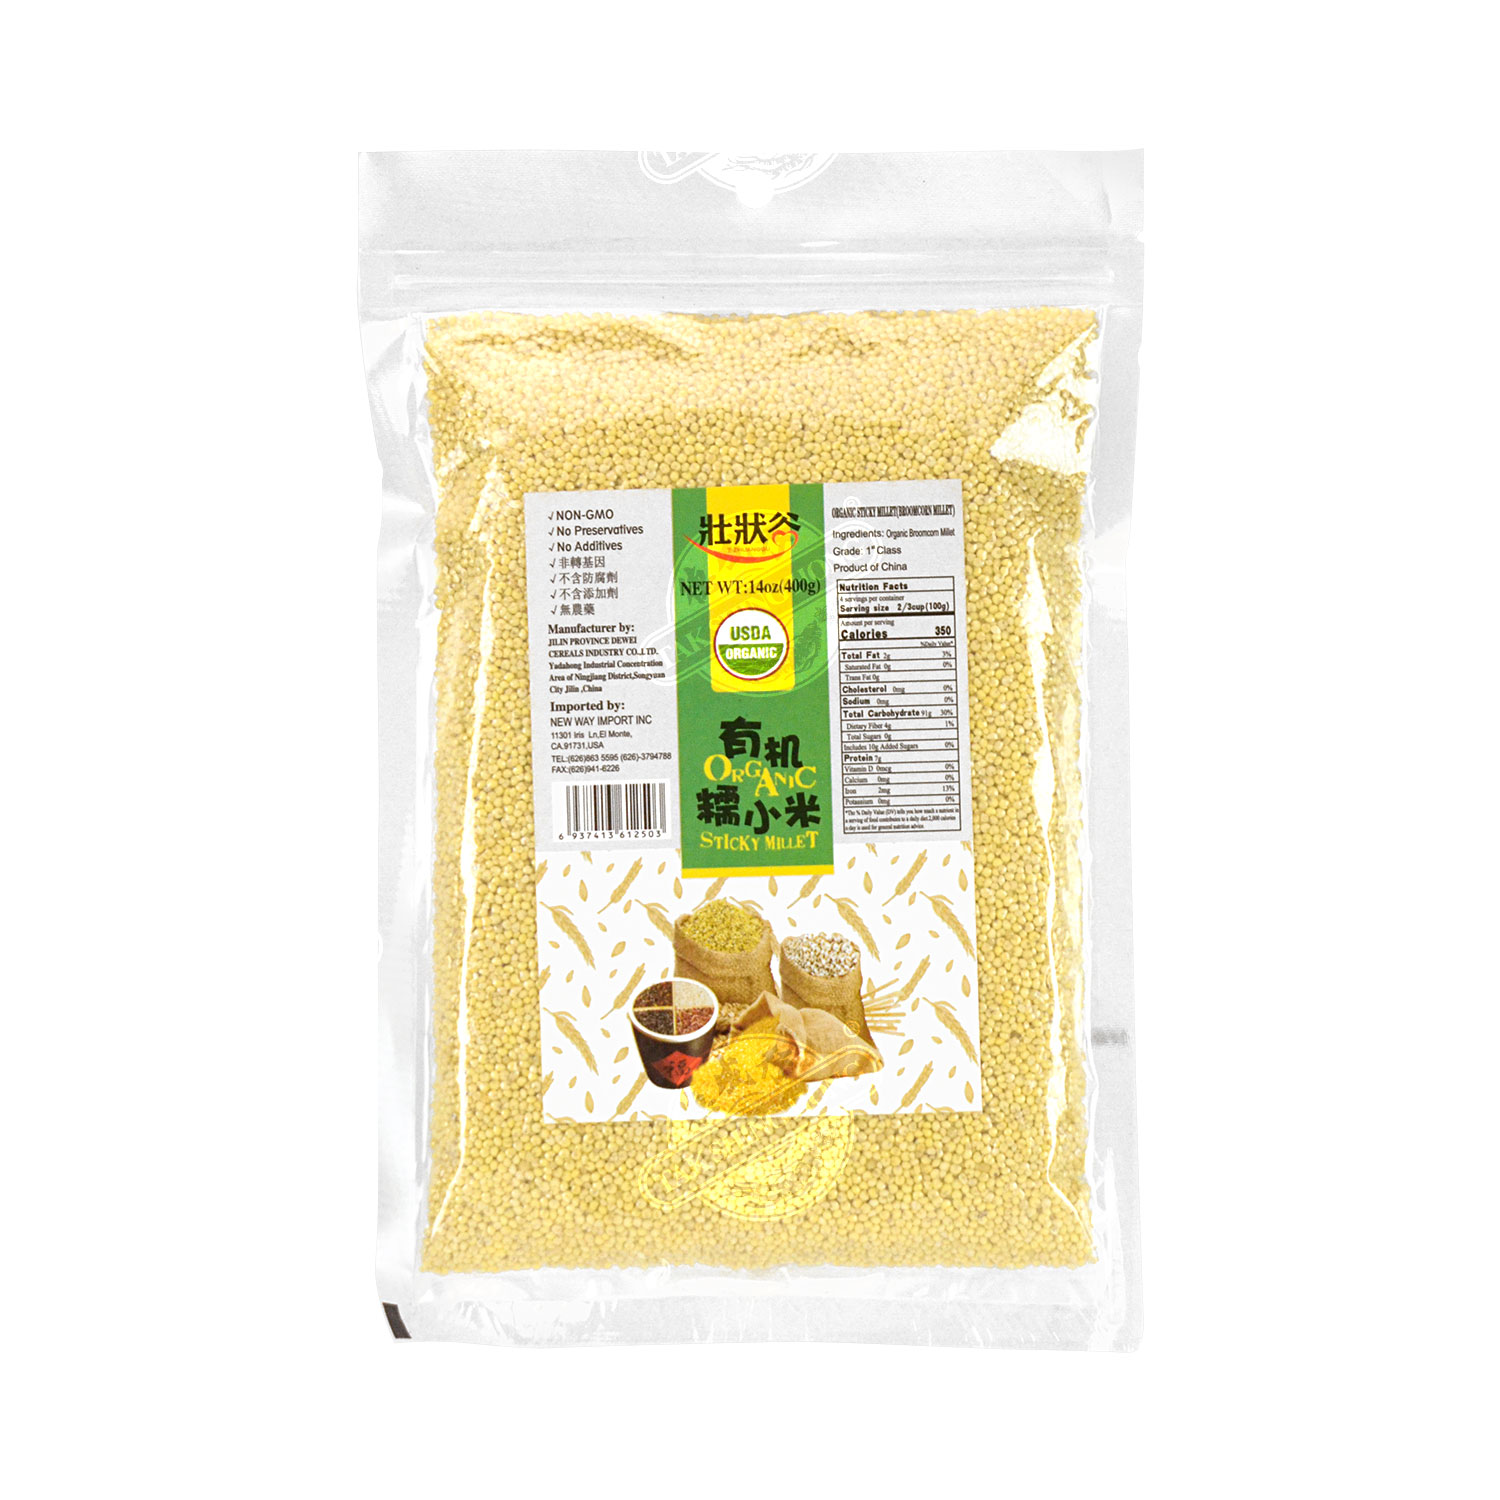 Z-ZHUANGGU Sticky Millet 400g - Tak Shing Hong